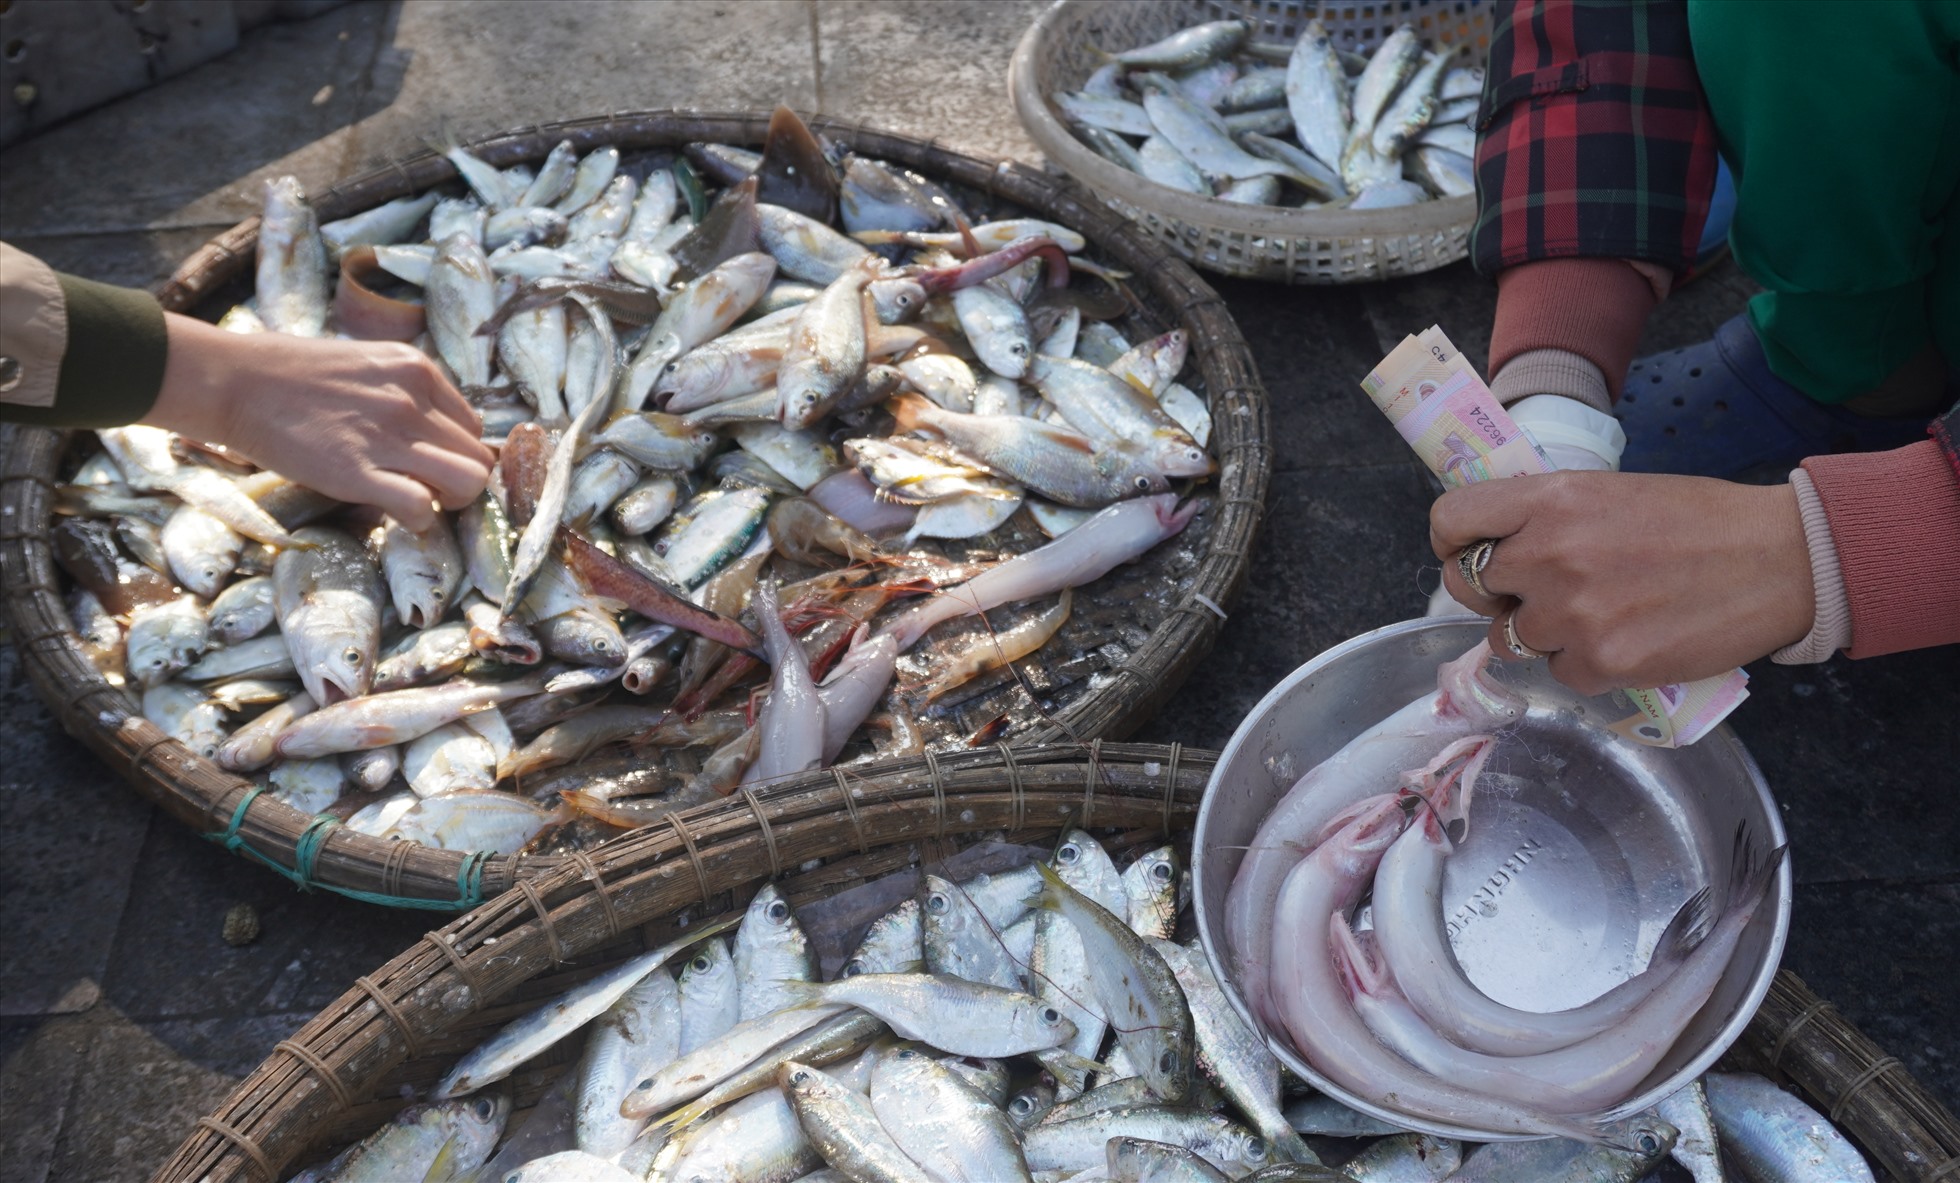 Loại hải sản được người dân tìm mua nhiều nhất là cá khoai, hiện, giá bán cá khoai tại biển Sầm Sơn dao động ở mức khoảng 500 nghìn/1kg. Ảnh: Quách Du